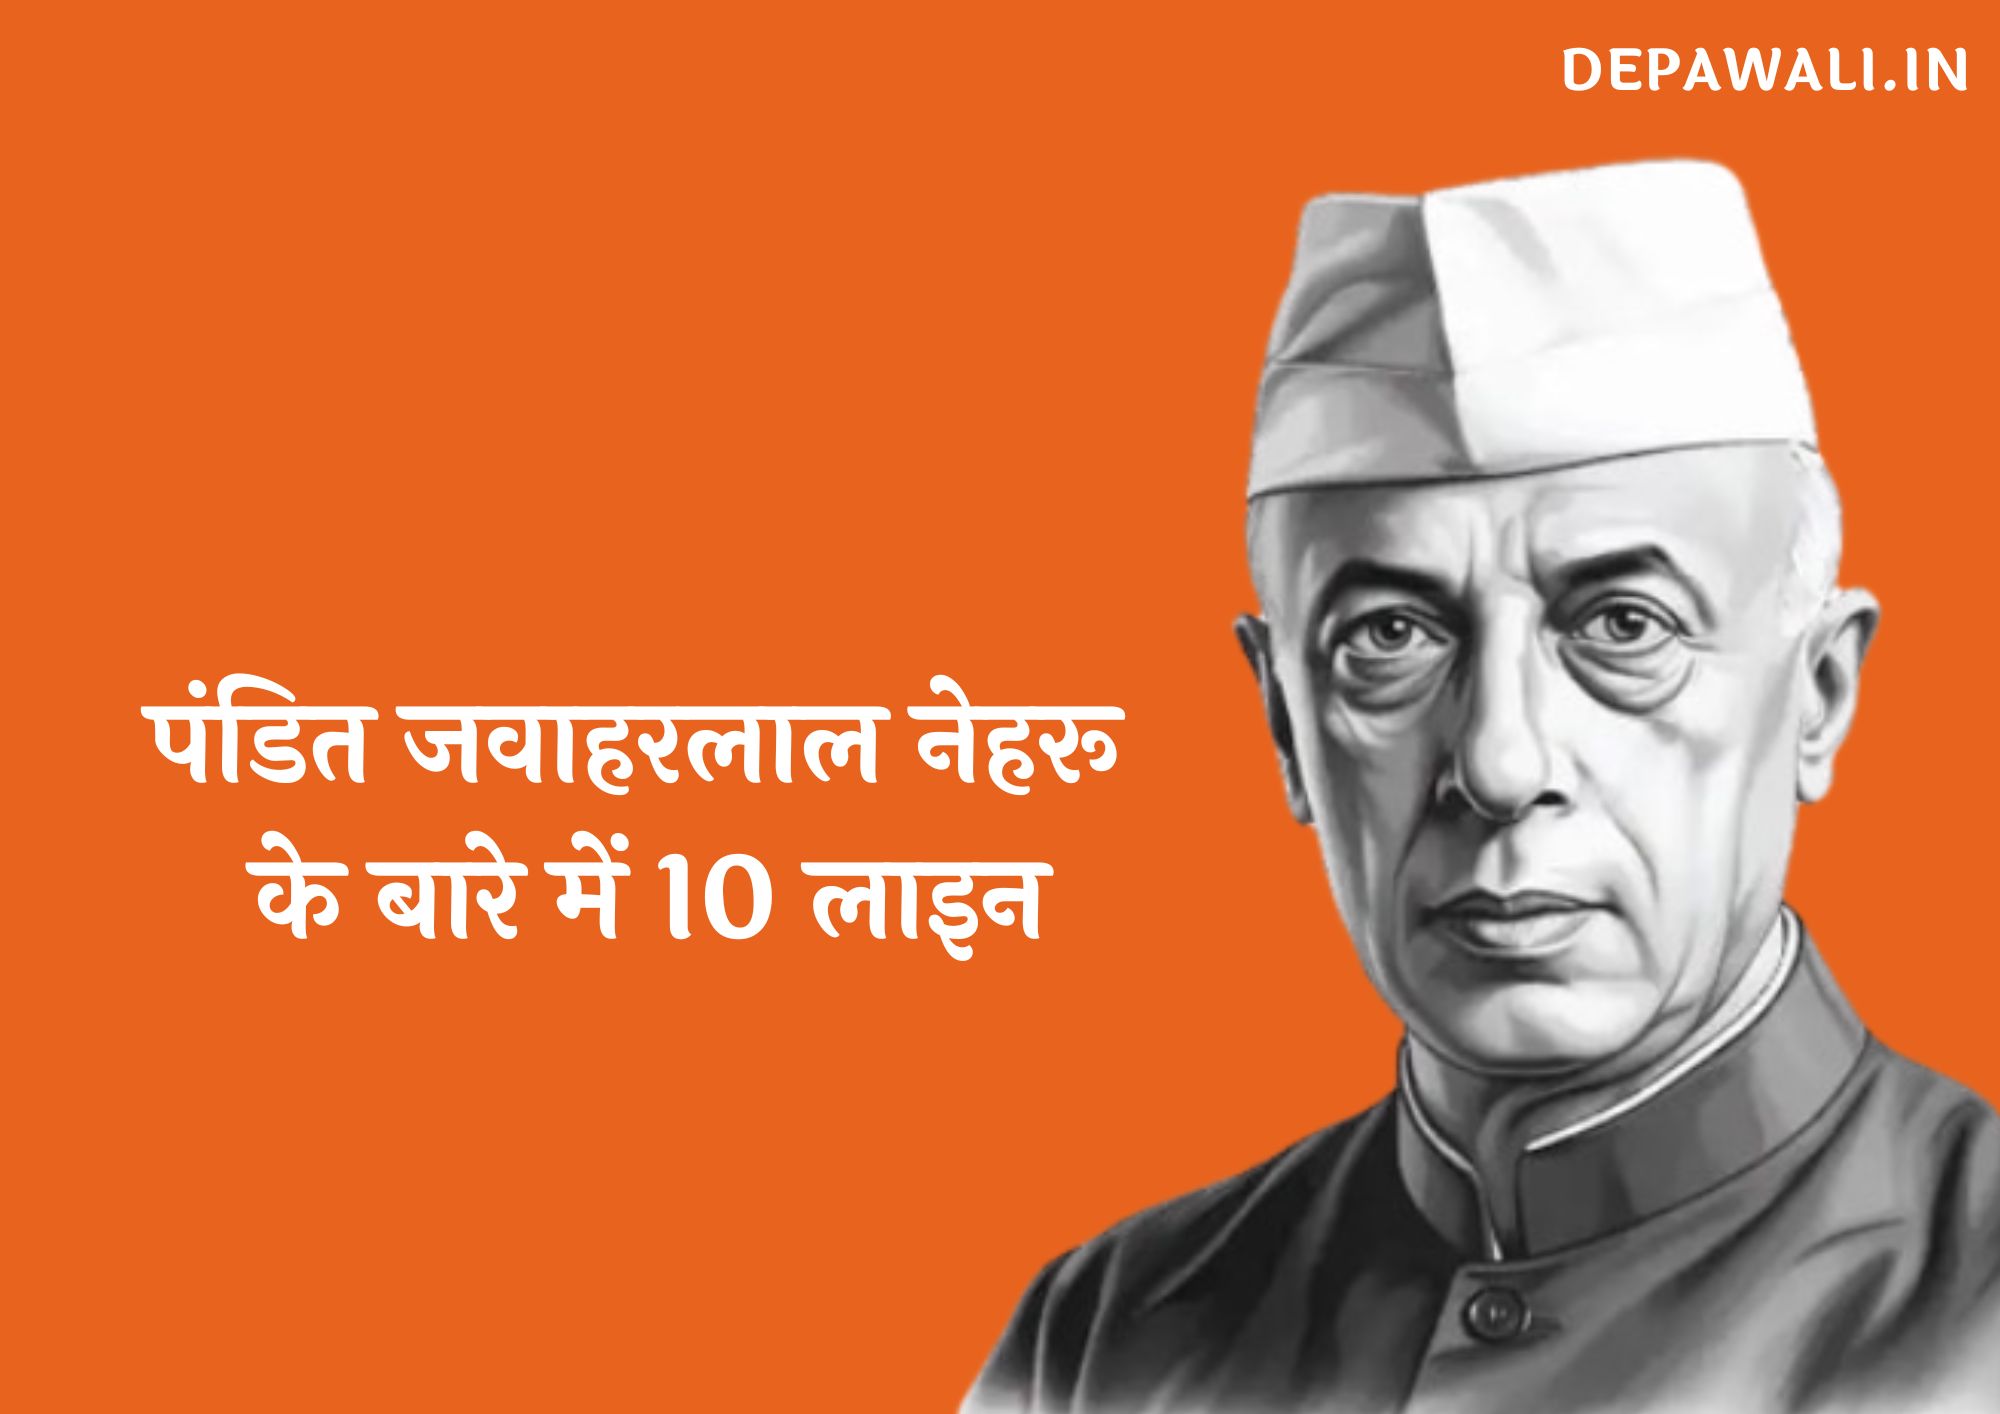 पंडित जवाहरलाल नेहरू के बारे में 10 लाइन हिंदी में - 10 Lines On Jawaharlal Nehru In Hindi